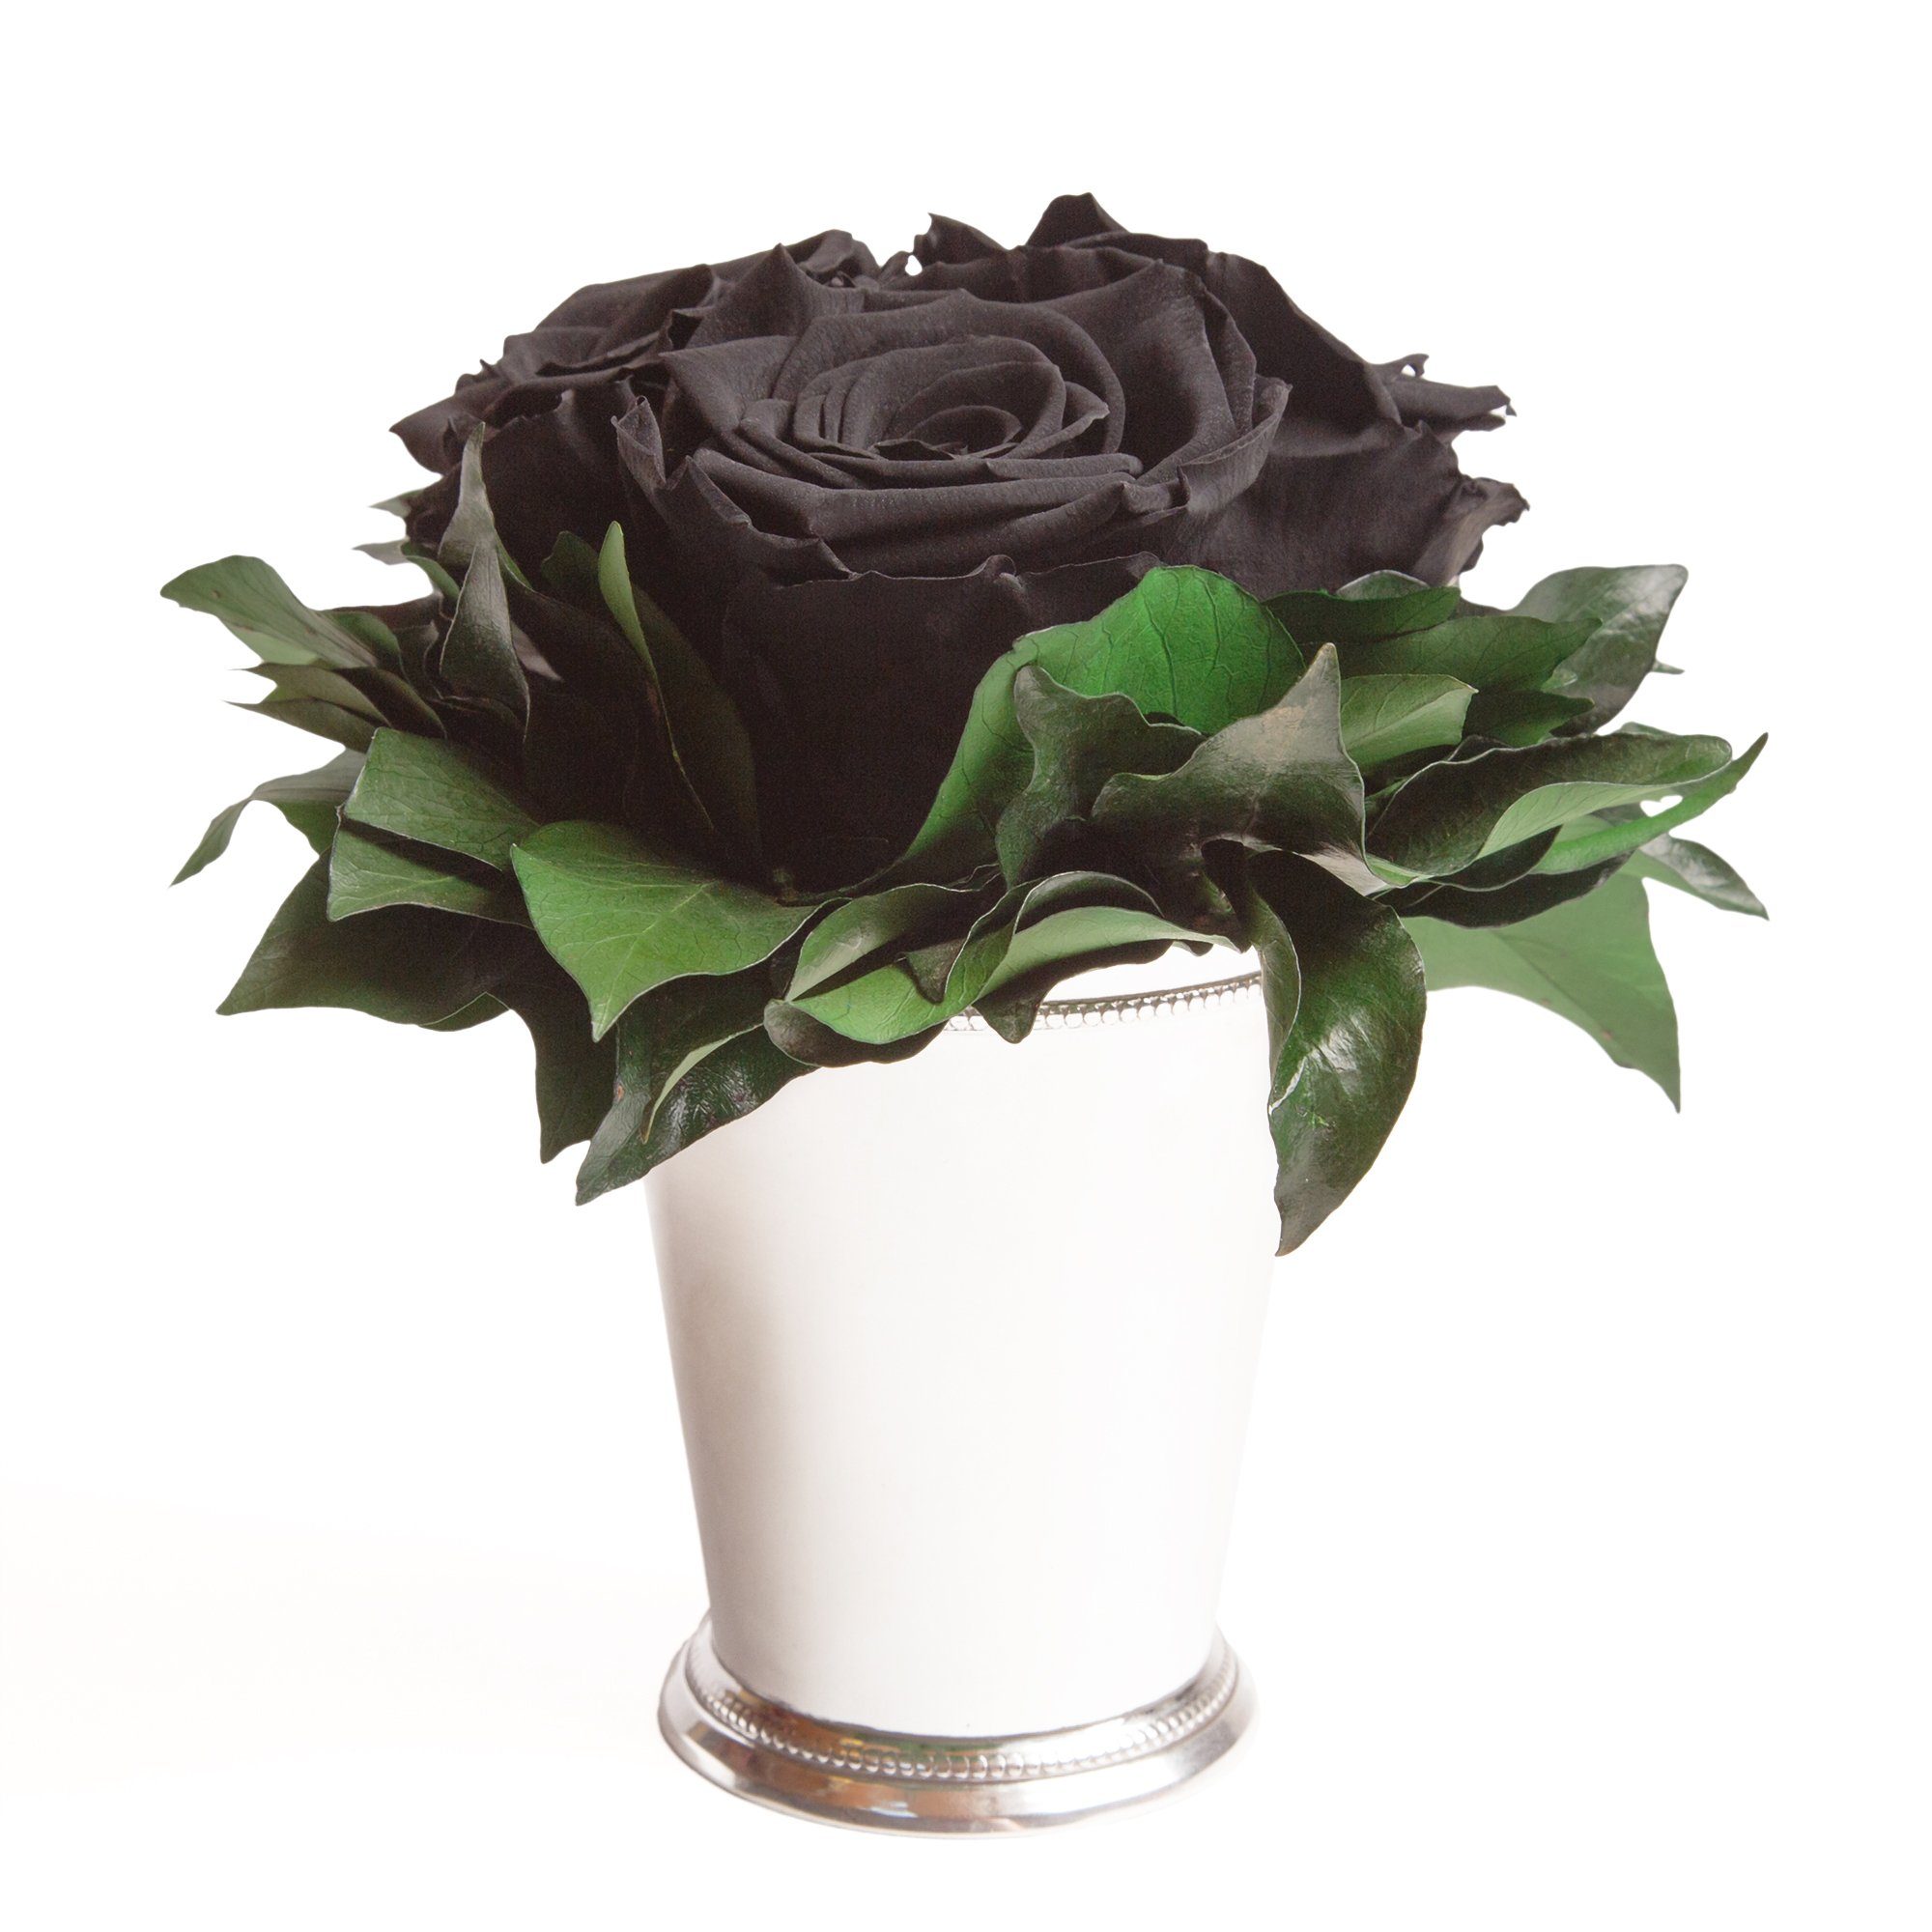 Kunstorchidee 3 Infinity Rosen silberfarbene Vase Wohnzimmer Deko Blumenstrauß Rose, ROSEMARIE SCHULZ Heidelberg, Höhe 15 cm, Rose haltbar bis zu 3 Jahre Schwarz